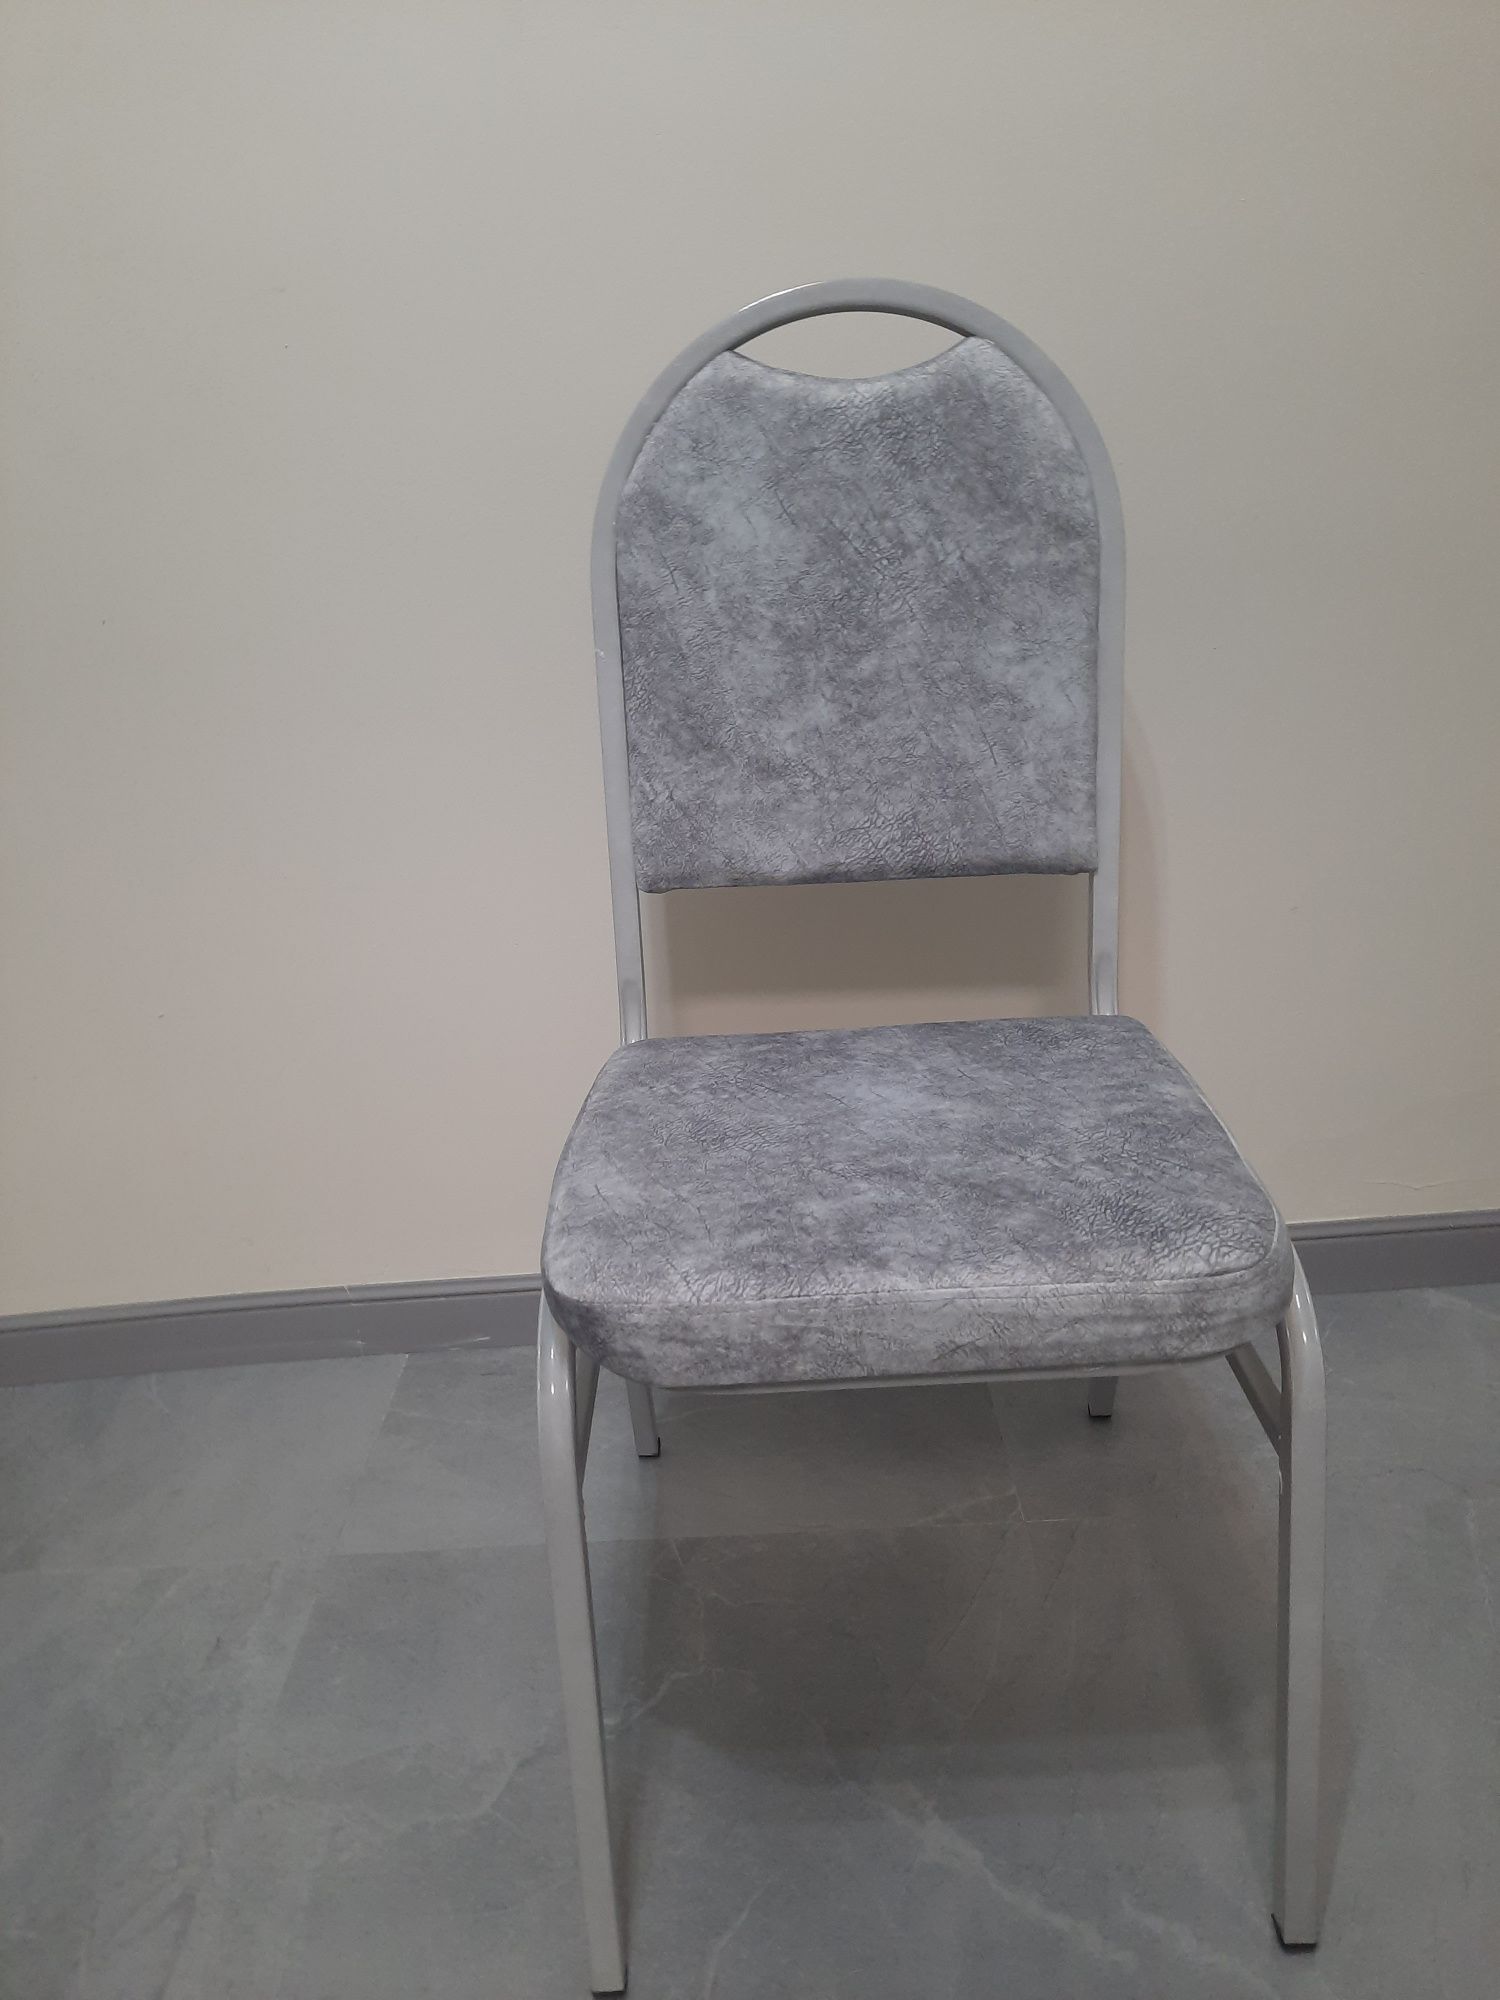 Новые стулья крепкие серого цвета, складываются друг в друга